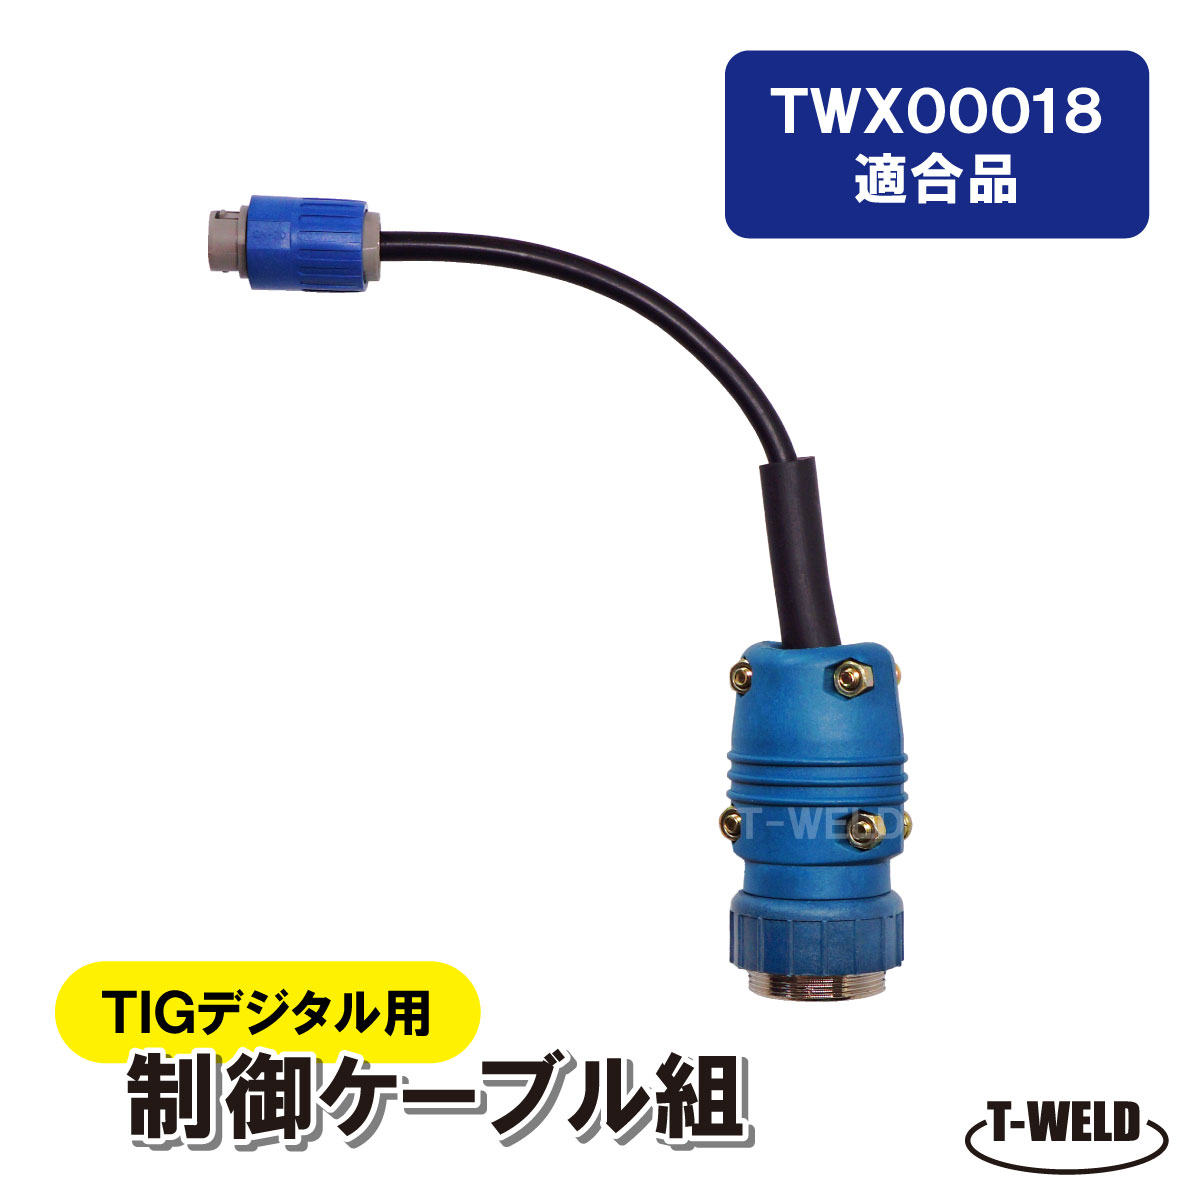 TIG トーチ 200A空冷 WP26×8m ハンドル黒 スイッチ式 中国式 www